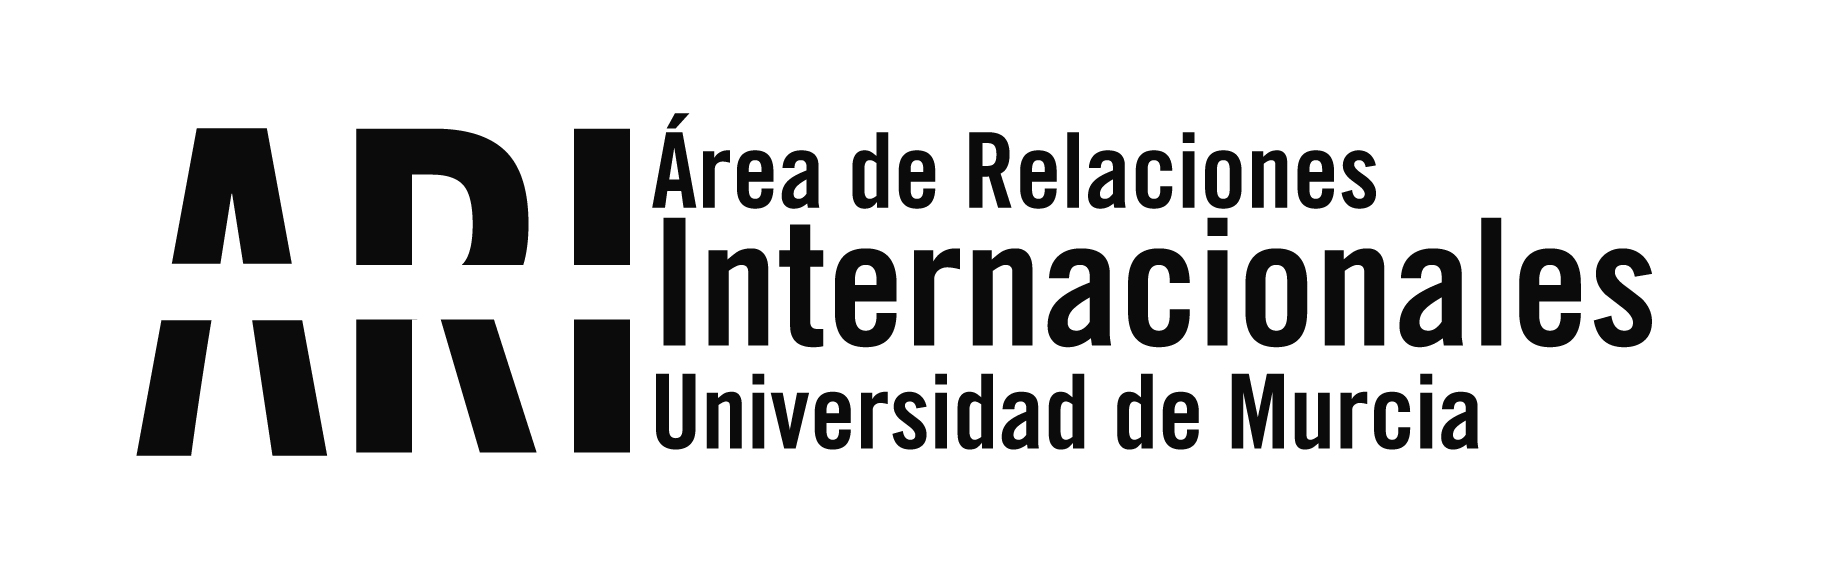 Fallo del jurado del IV Concurso Santander Ingenio Tu ingenio tiene premio - Área de Relaciones Internacionales